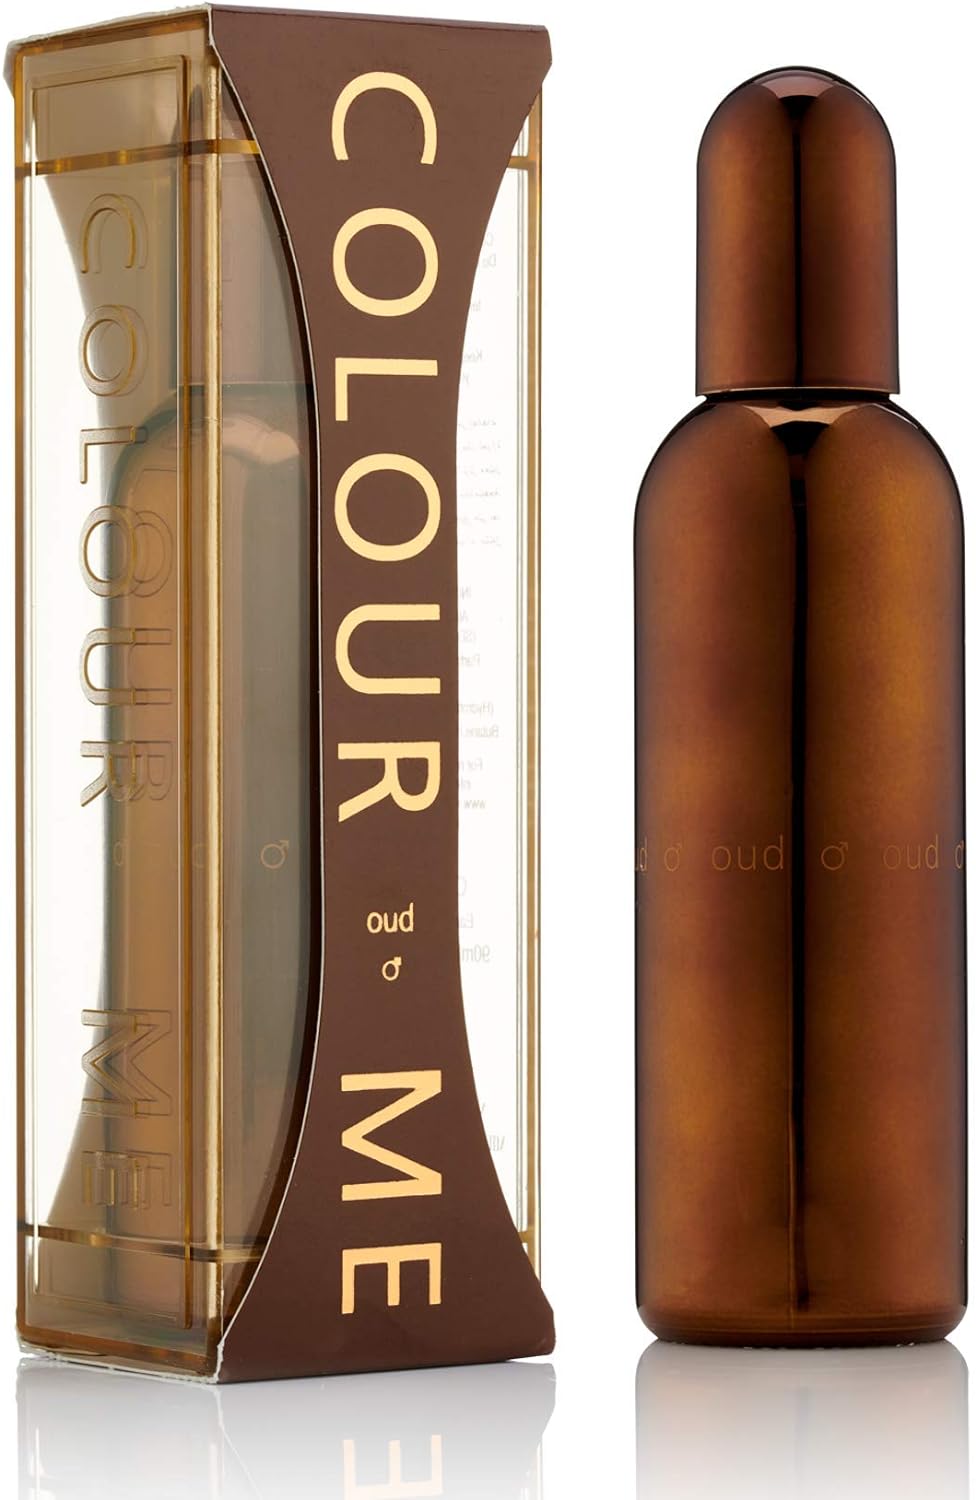 Colour Me Oud - Fragrance for Men - 90ml Eau de Parfum, by Milton-Lloyd